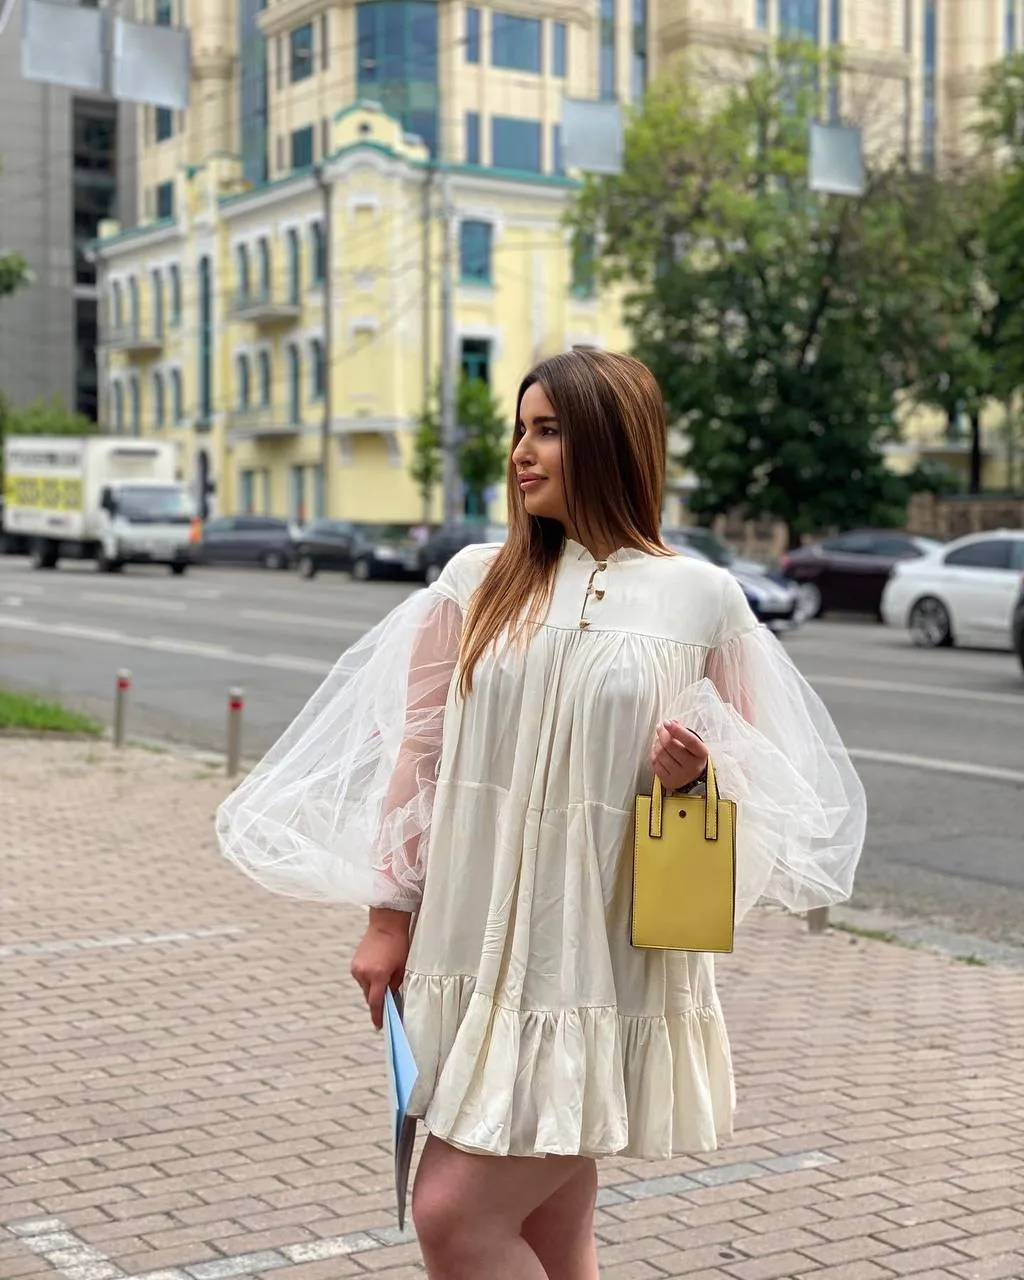 Anna ukraine brides godatenow